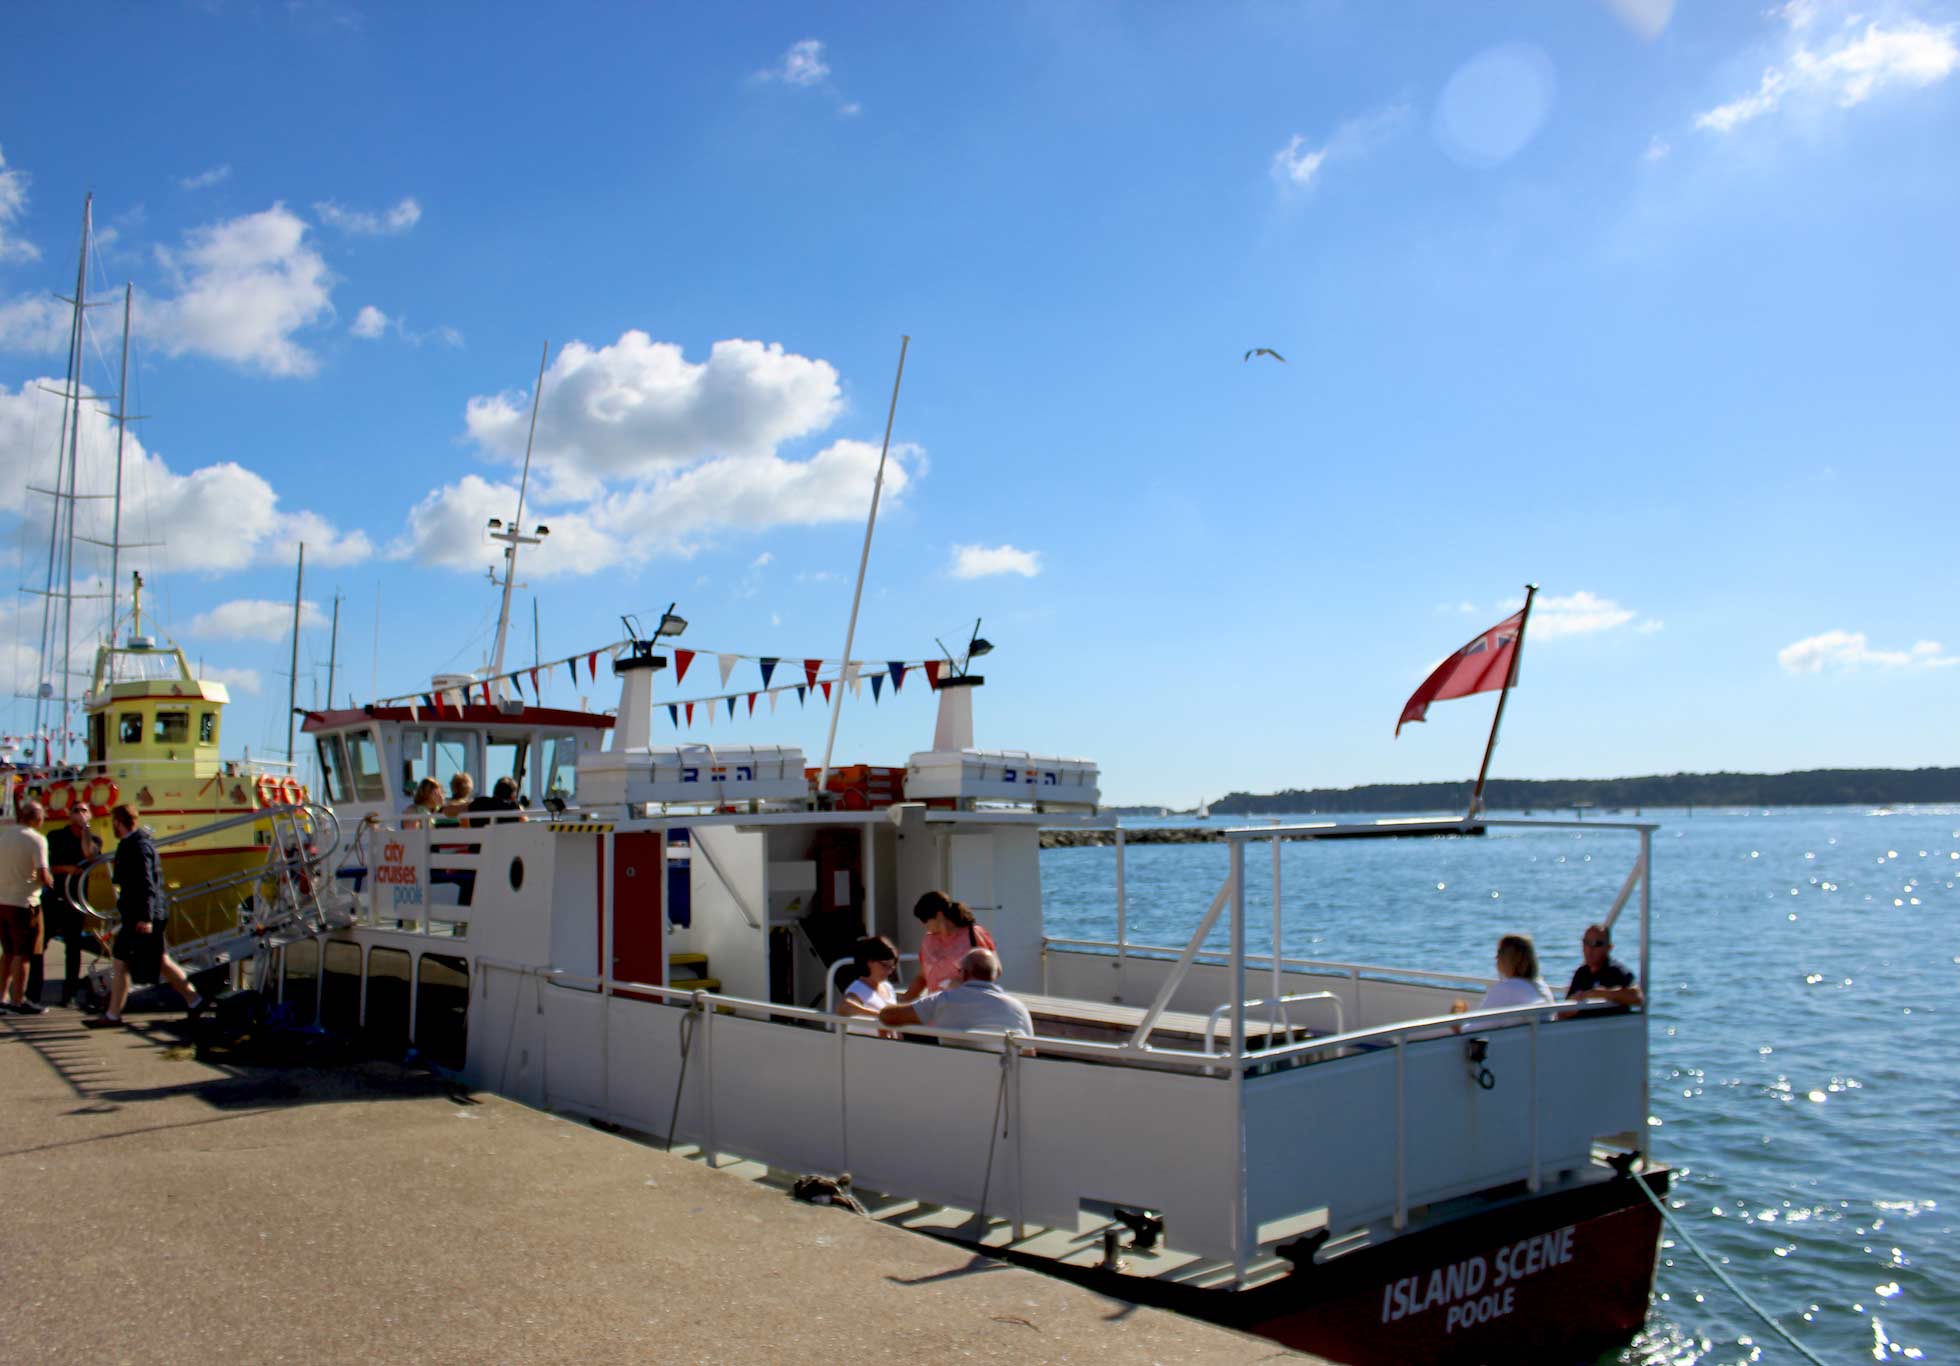 Island Scene, güvertede oturan insanlarla Poole'a demirlemiş küçük bir tekne.